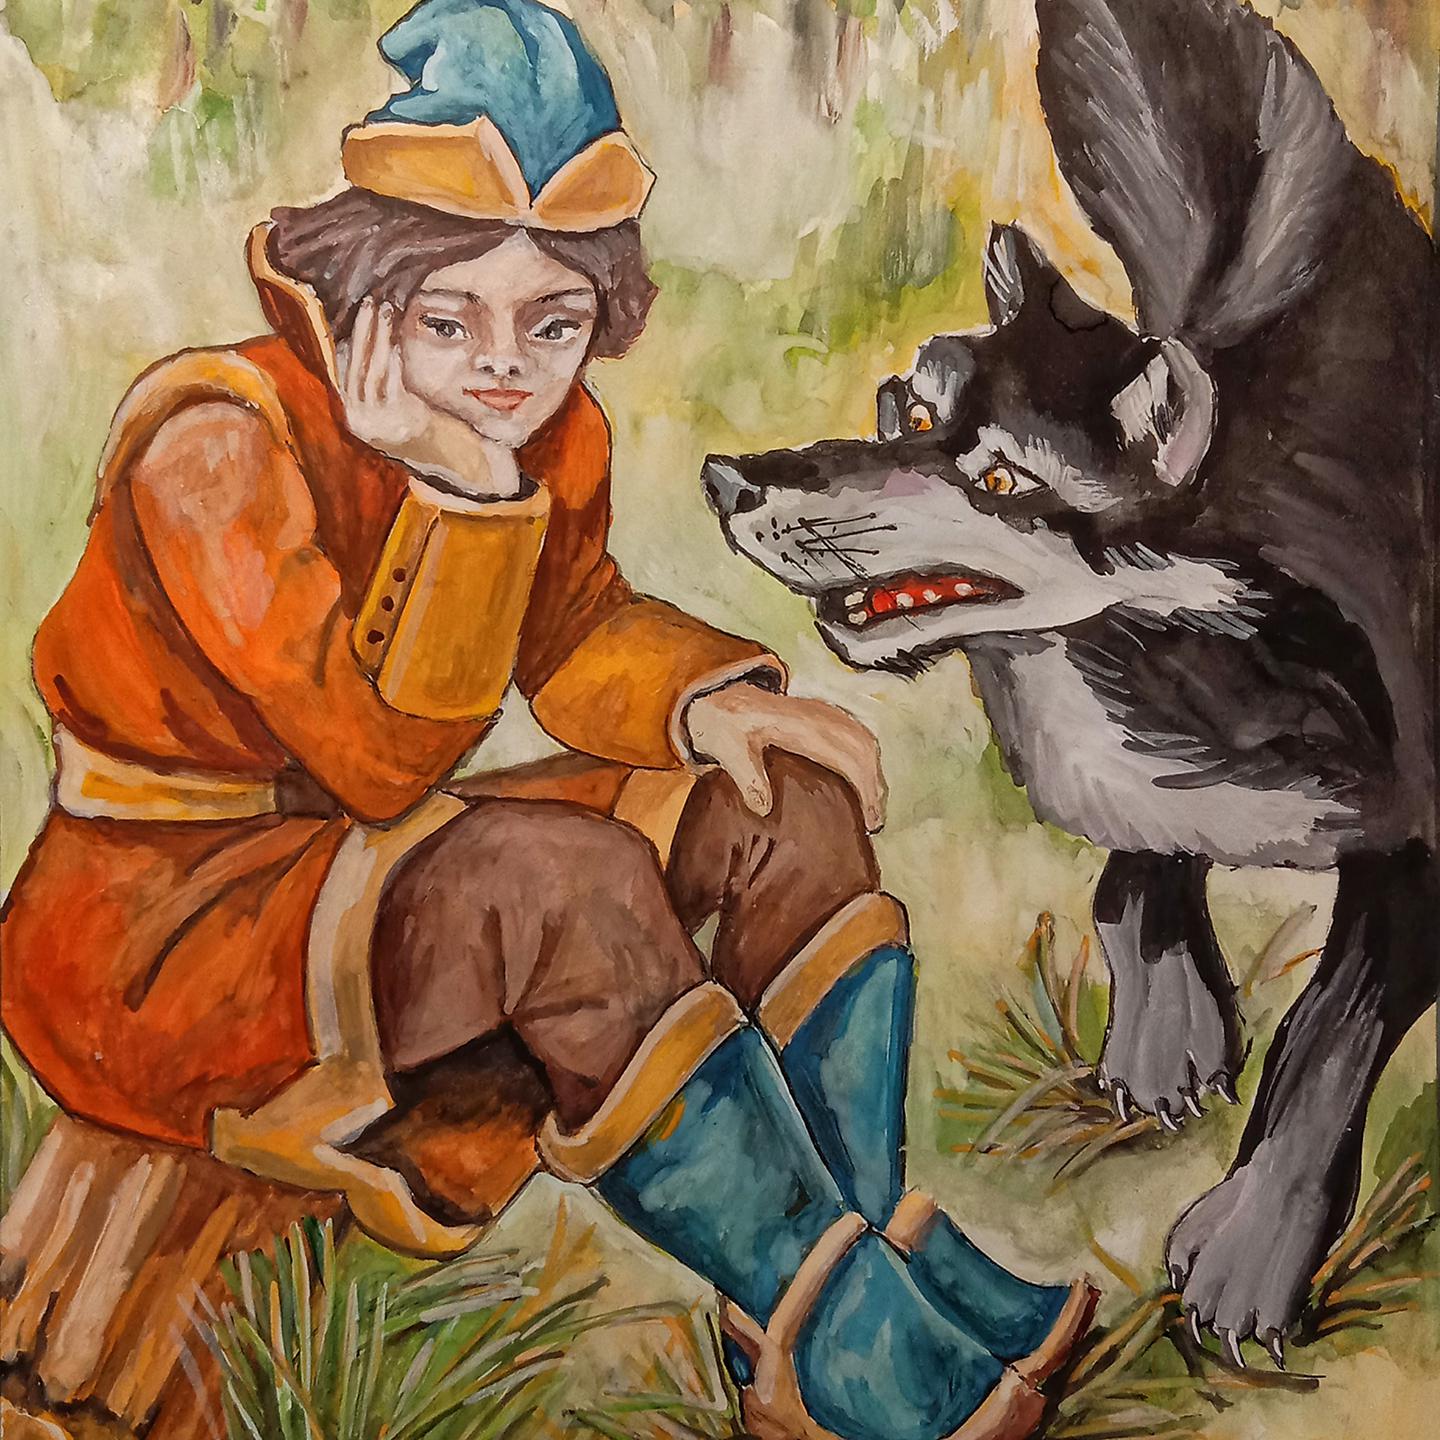 Царевич и серый волк 1 часть. Иванцаревичь и серый волк.